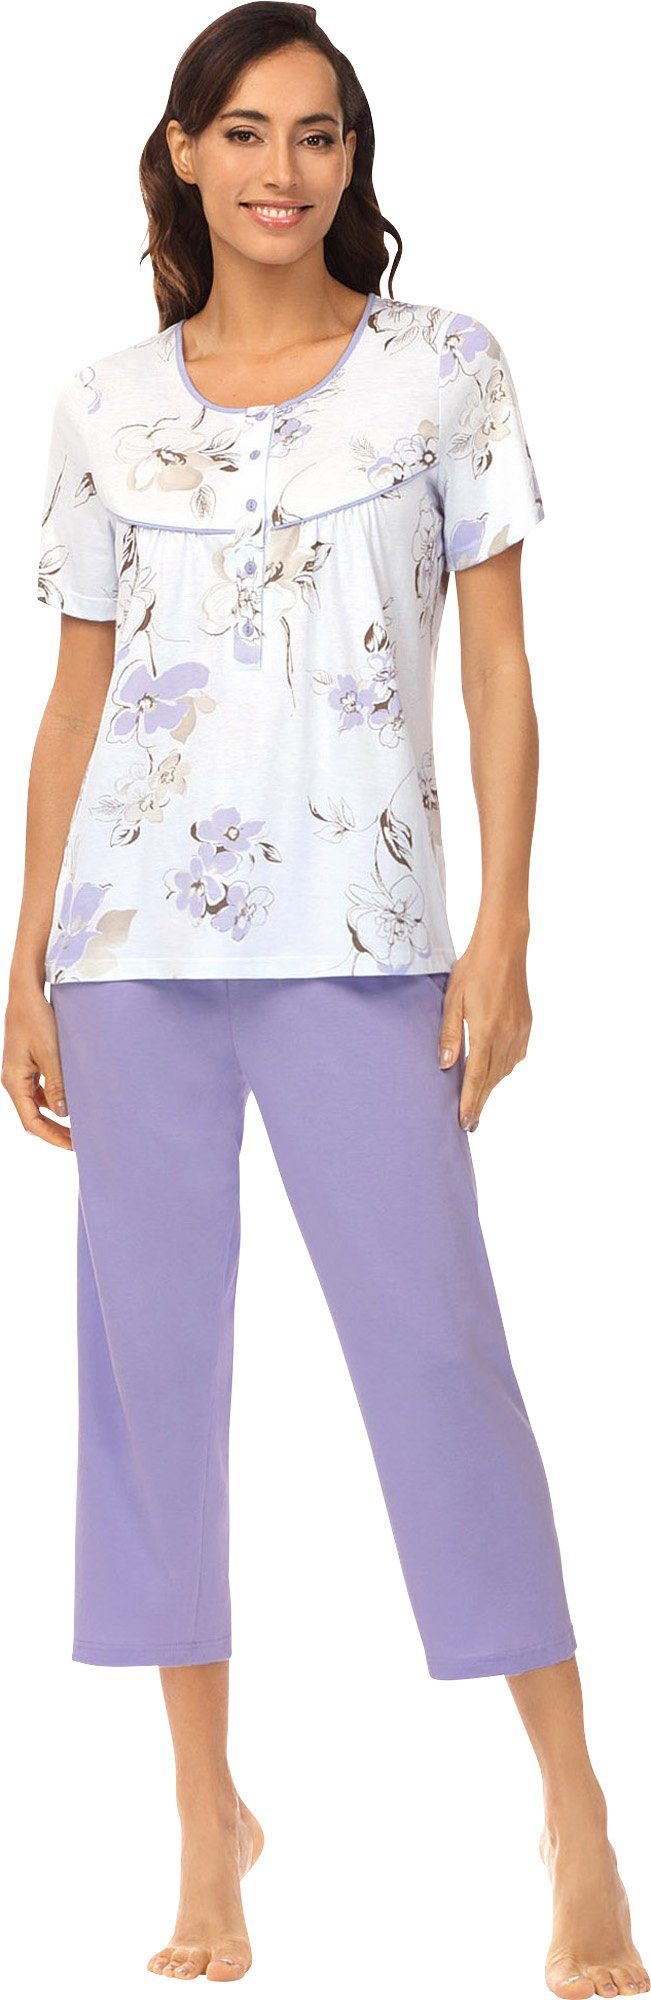 Blumen Damen-Schlafanzug Single-Jersey Ascafa Pyjama